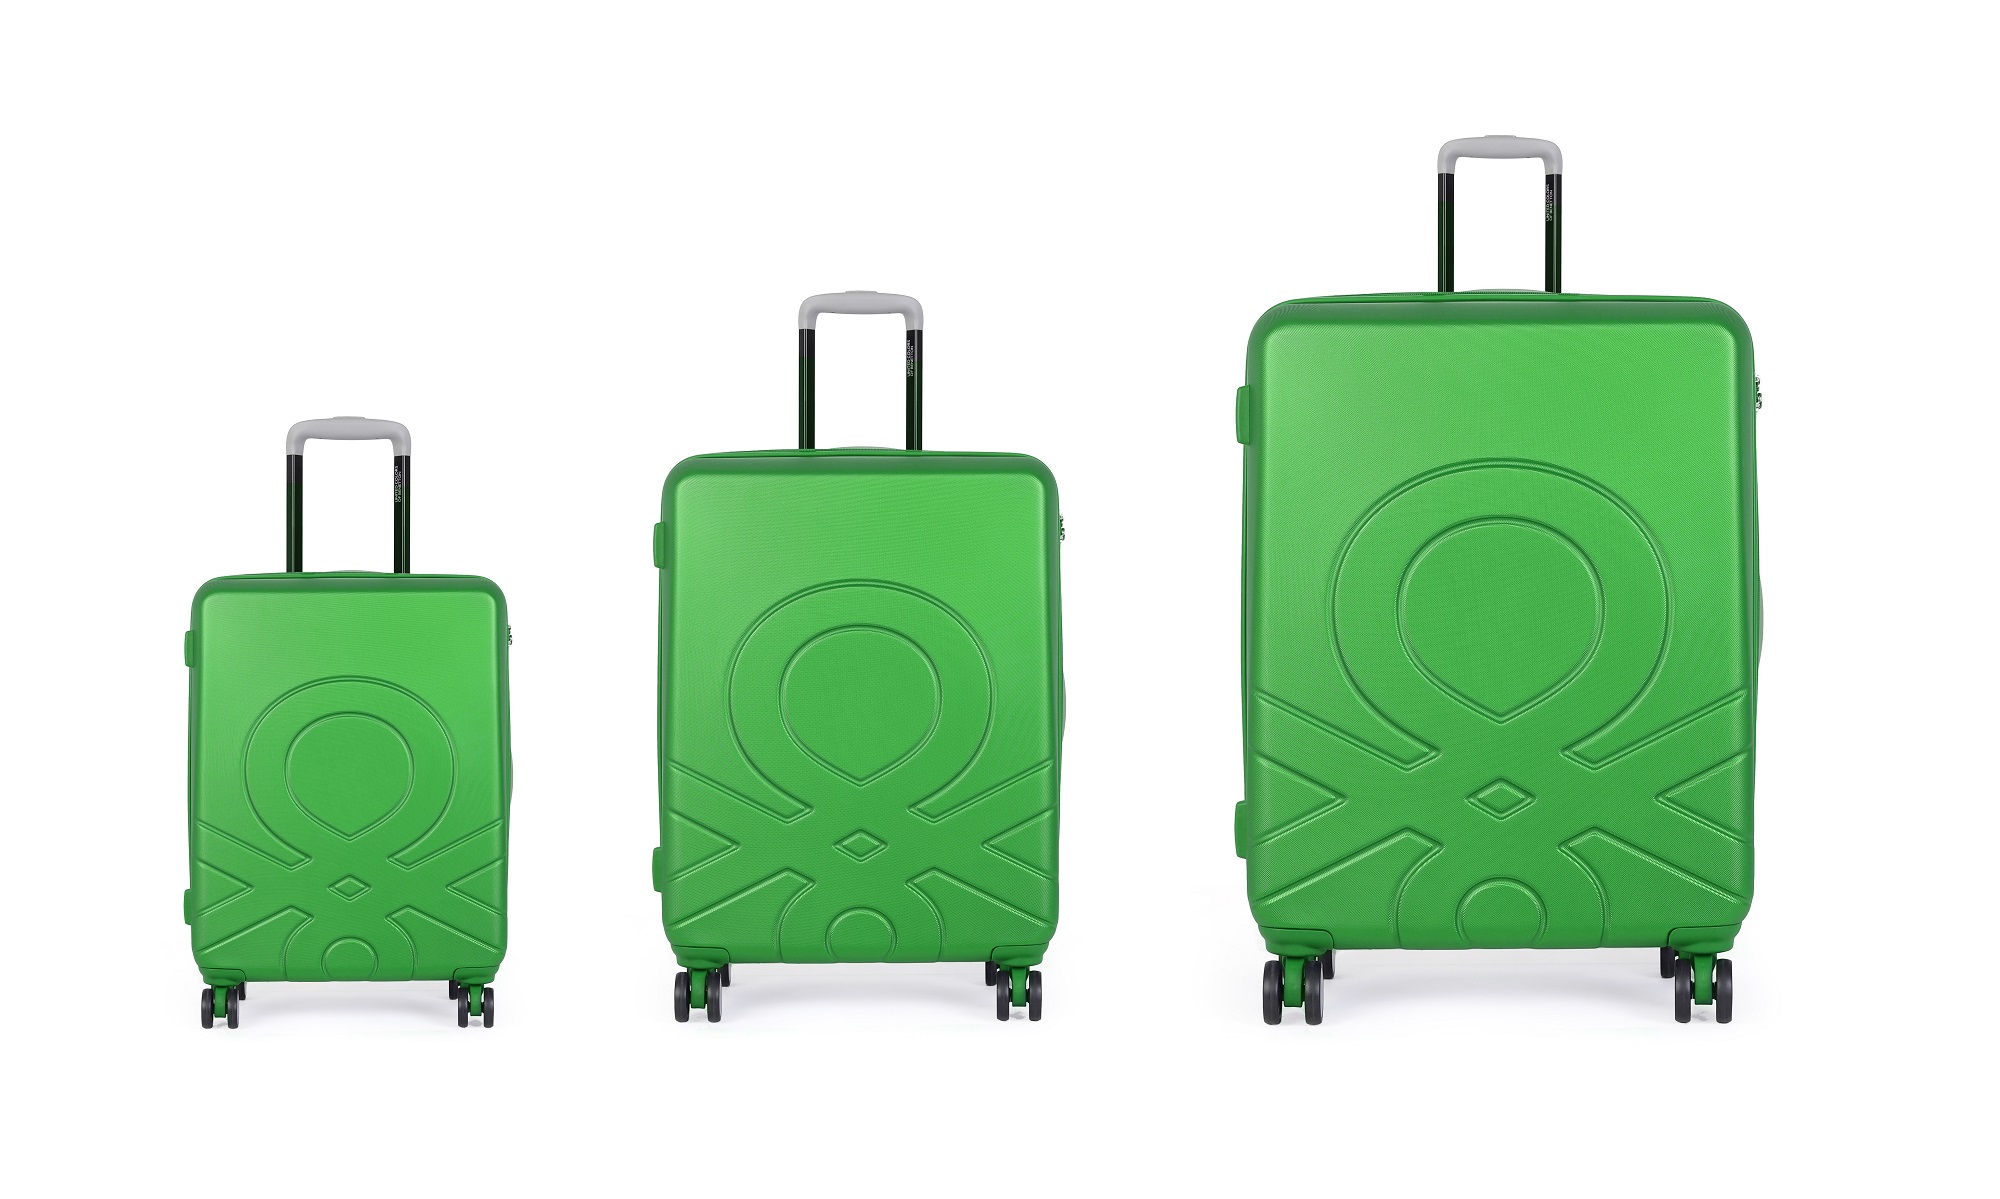 Cestovní značkový kufr Benetton v designovém zeleném provedení a střední velikosti – kvalita za příznivé ceny